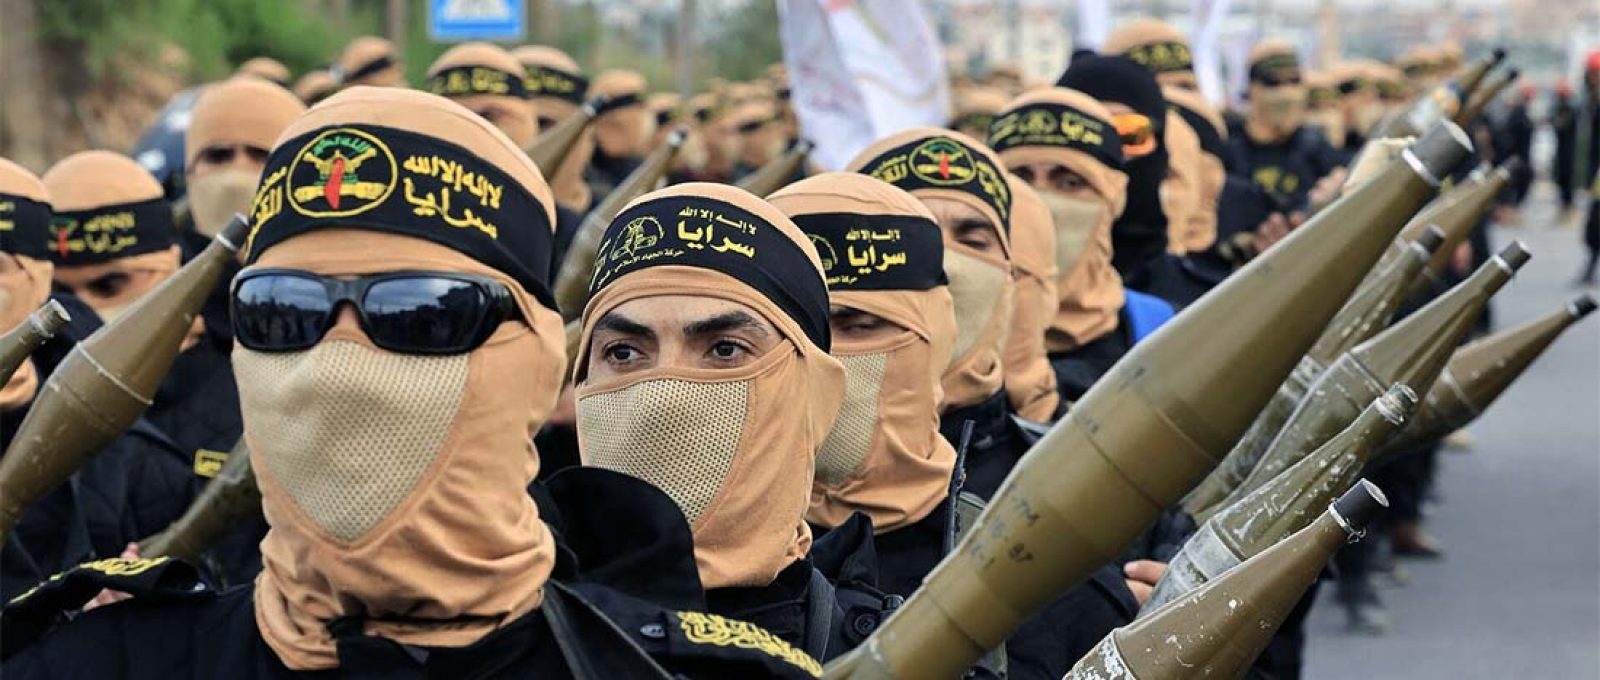 Membros da Jihad Islâmica Palestina marcham em Gaza (Mahmud Hams/AFP).